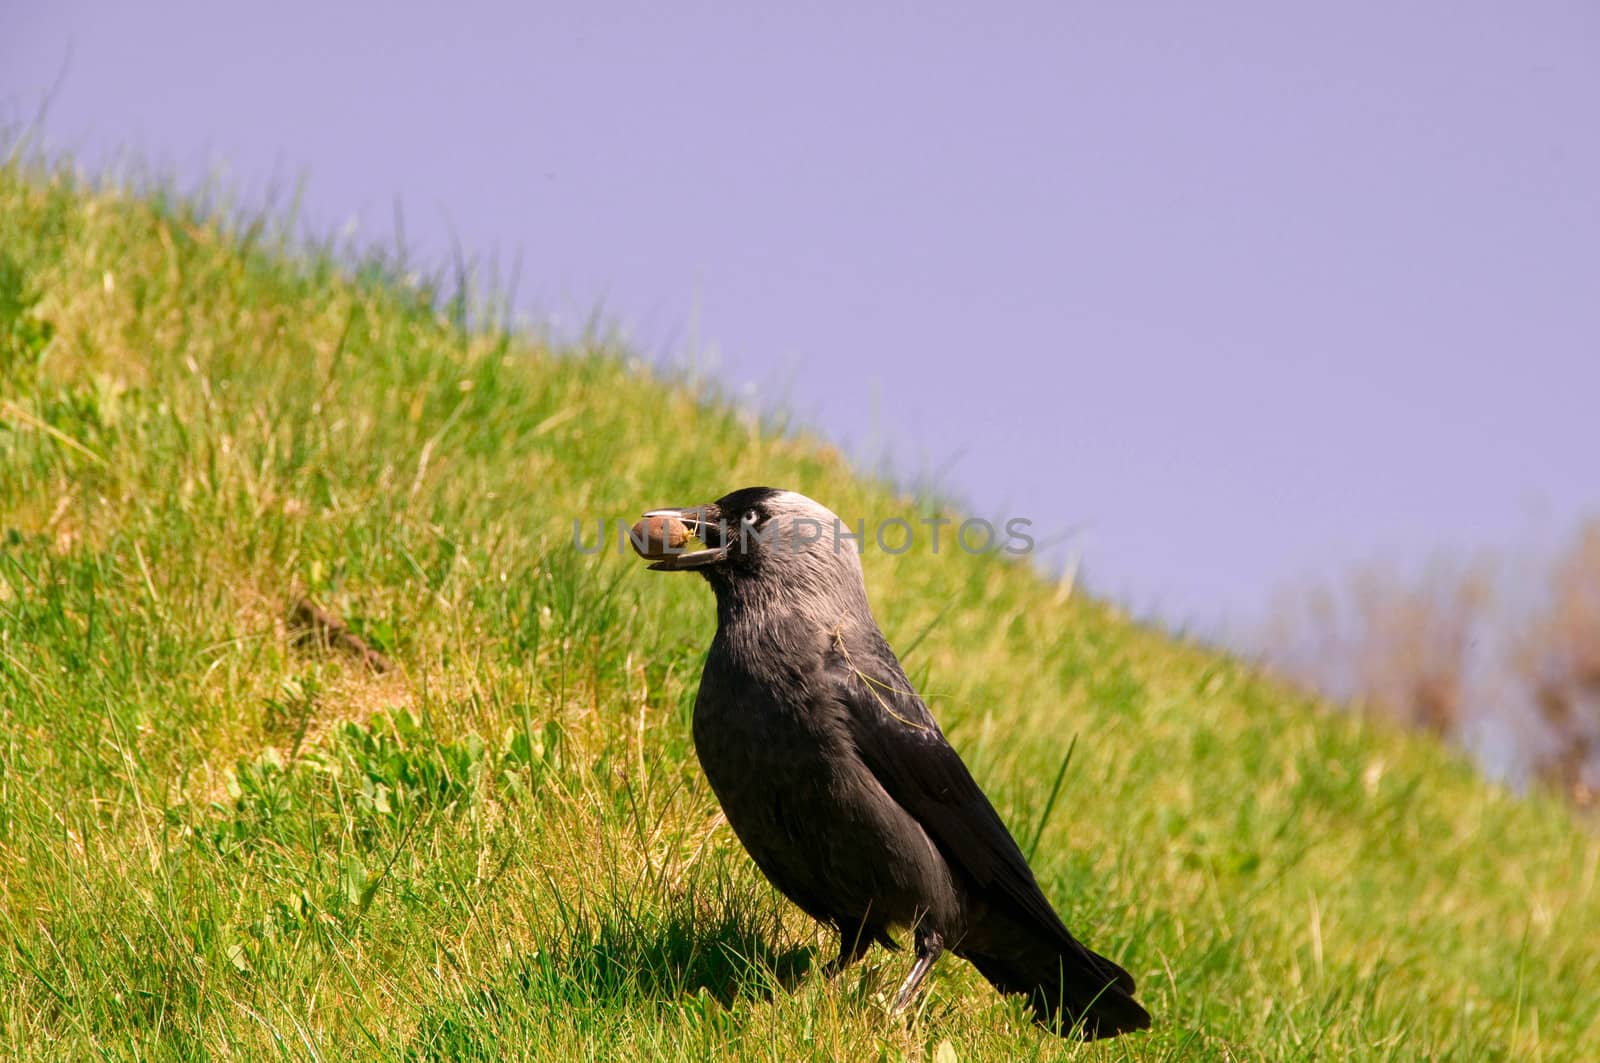 Jackdaw (Corvus monedula) by murysia